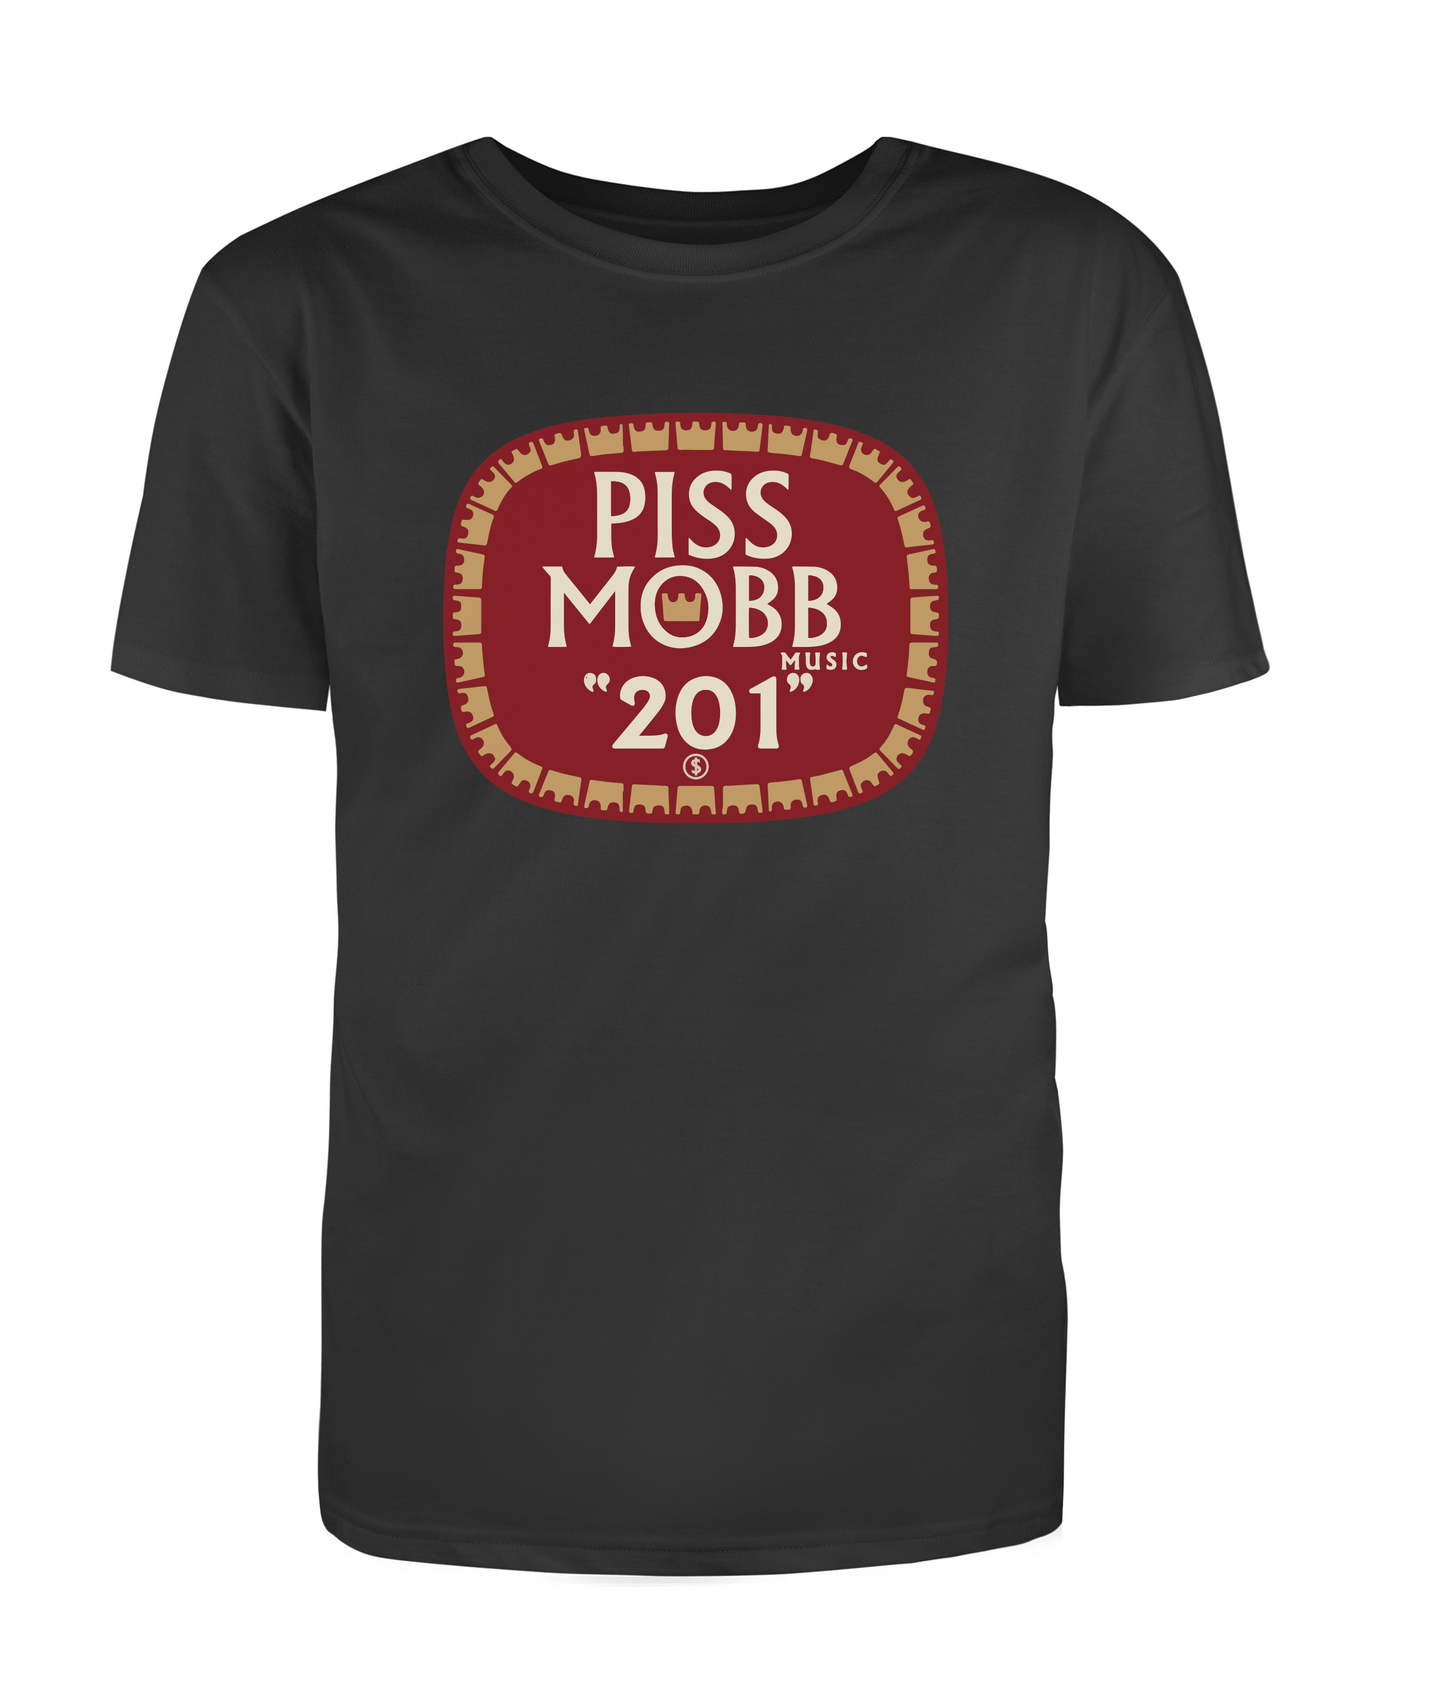 PI$$MOBB - Olde English Black T-shirt